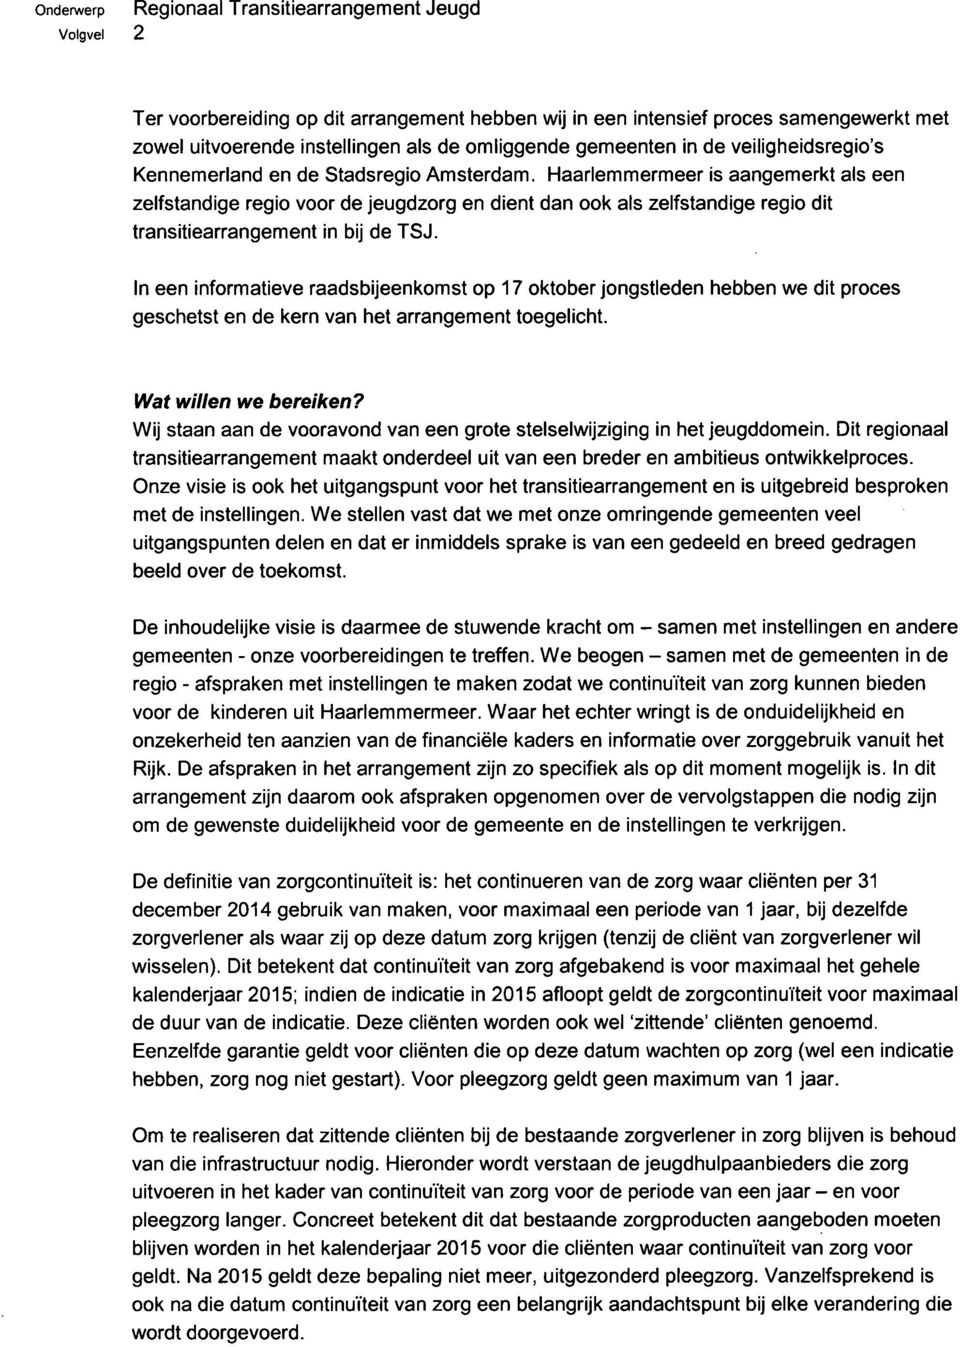 Haarlemmermeer is aangemerkt als een zelfstandige regio voor de jeugdzorg en dient dan ook als zelfstandige regio dit transitiearrangement in bij de TSJ.